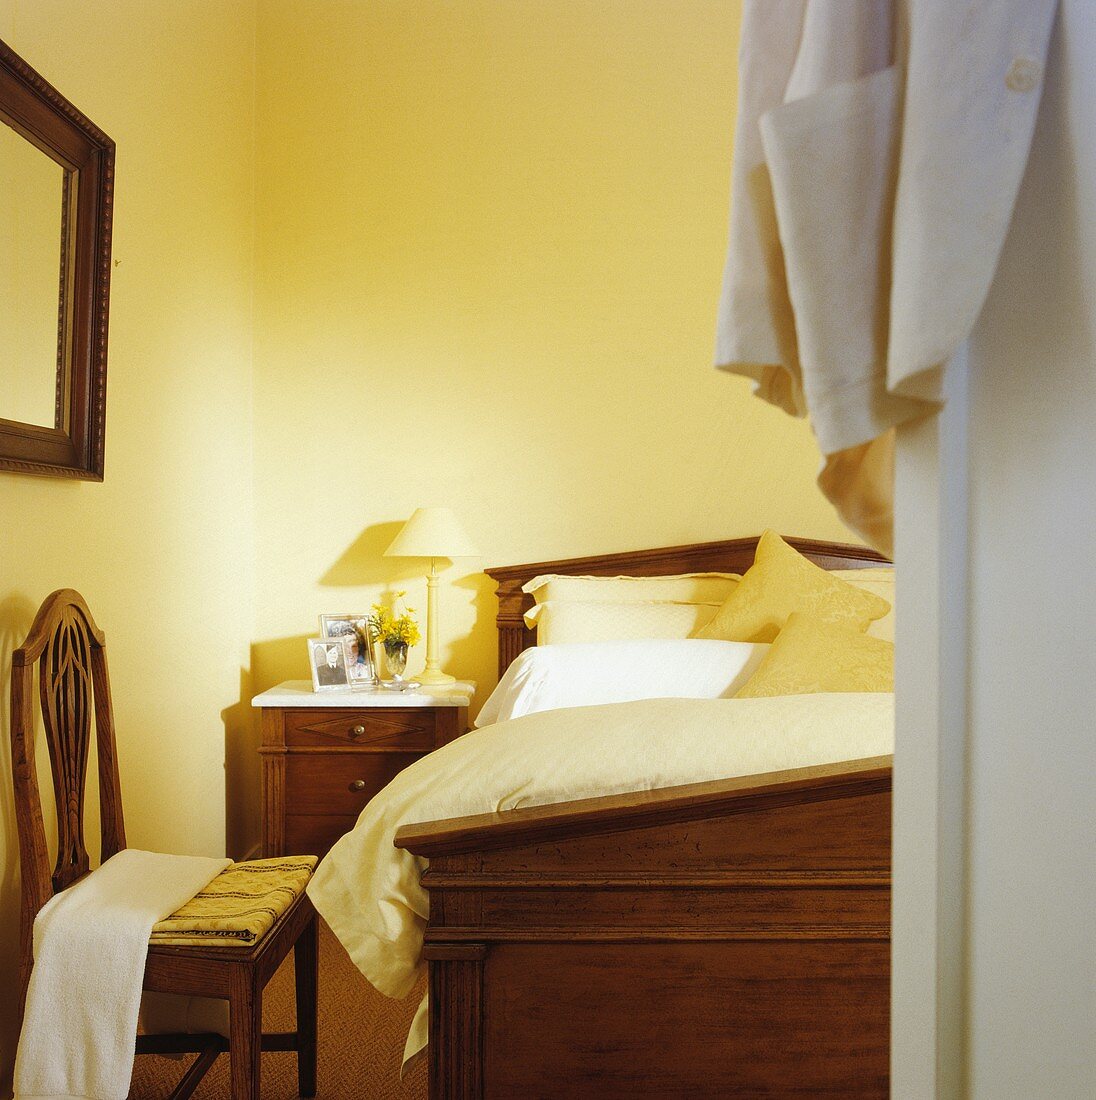 Blick durch offene Tür in pastellgelbes Schlafzimmer mit antikem Mahagoni-Bett, passendem Nachtschränkchen und Holzstuhl im Jugendstil